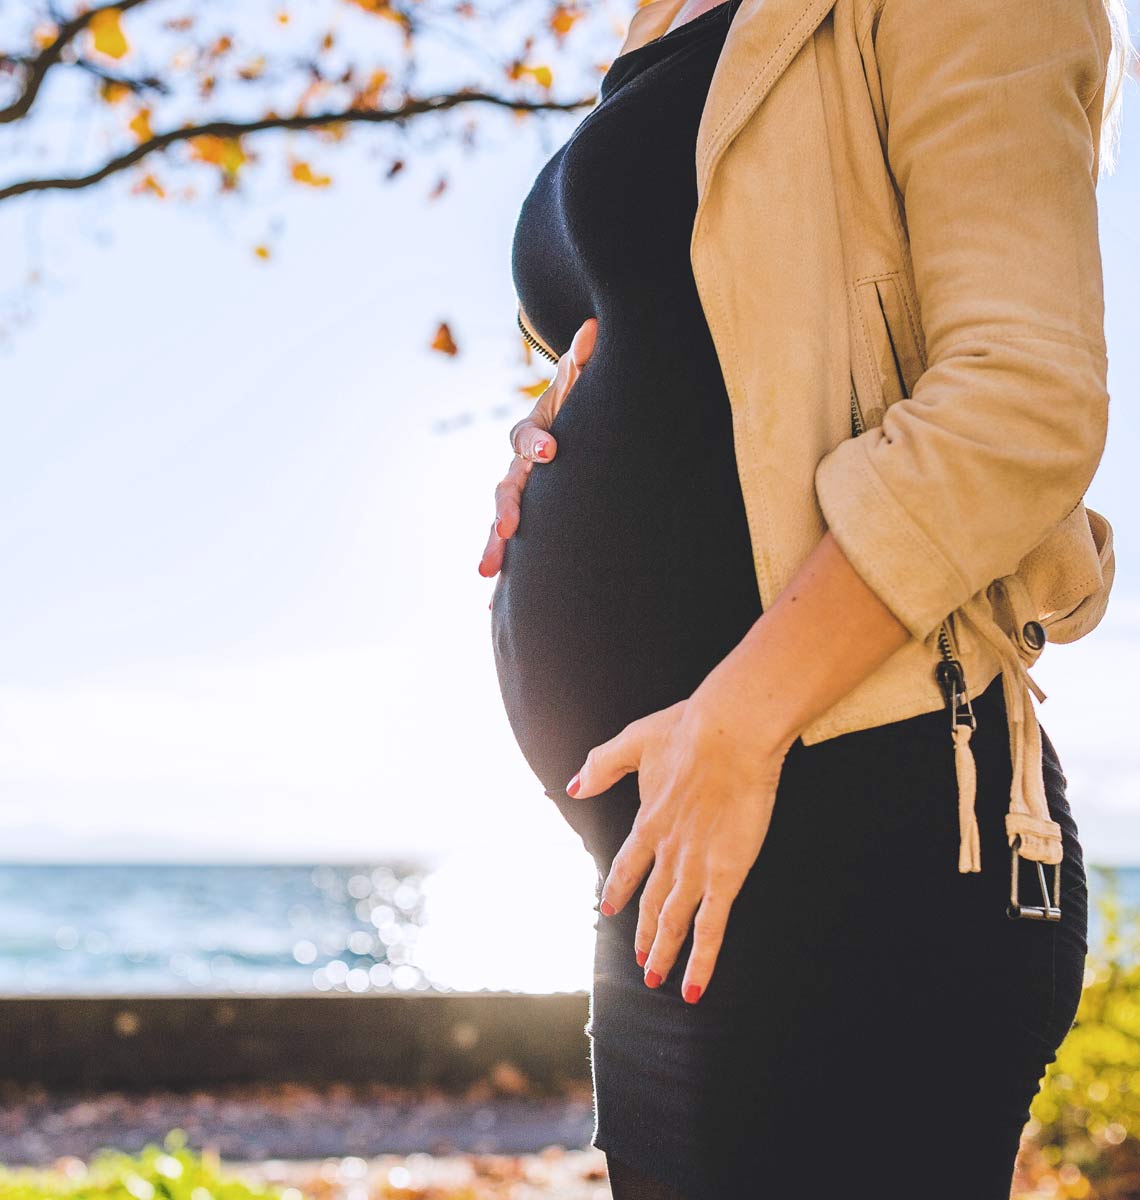 Hvornår er størst chance for blive gravid? | Apotekets